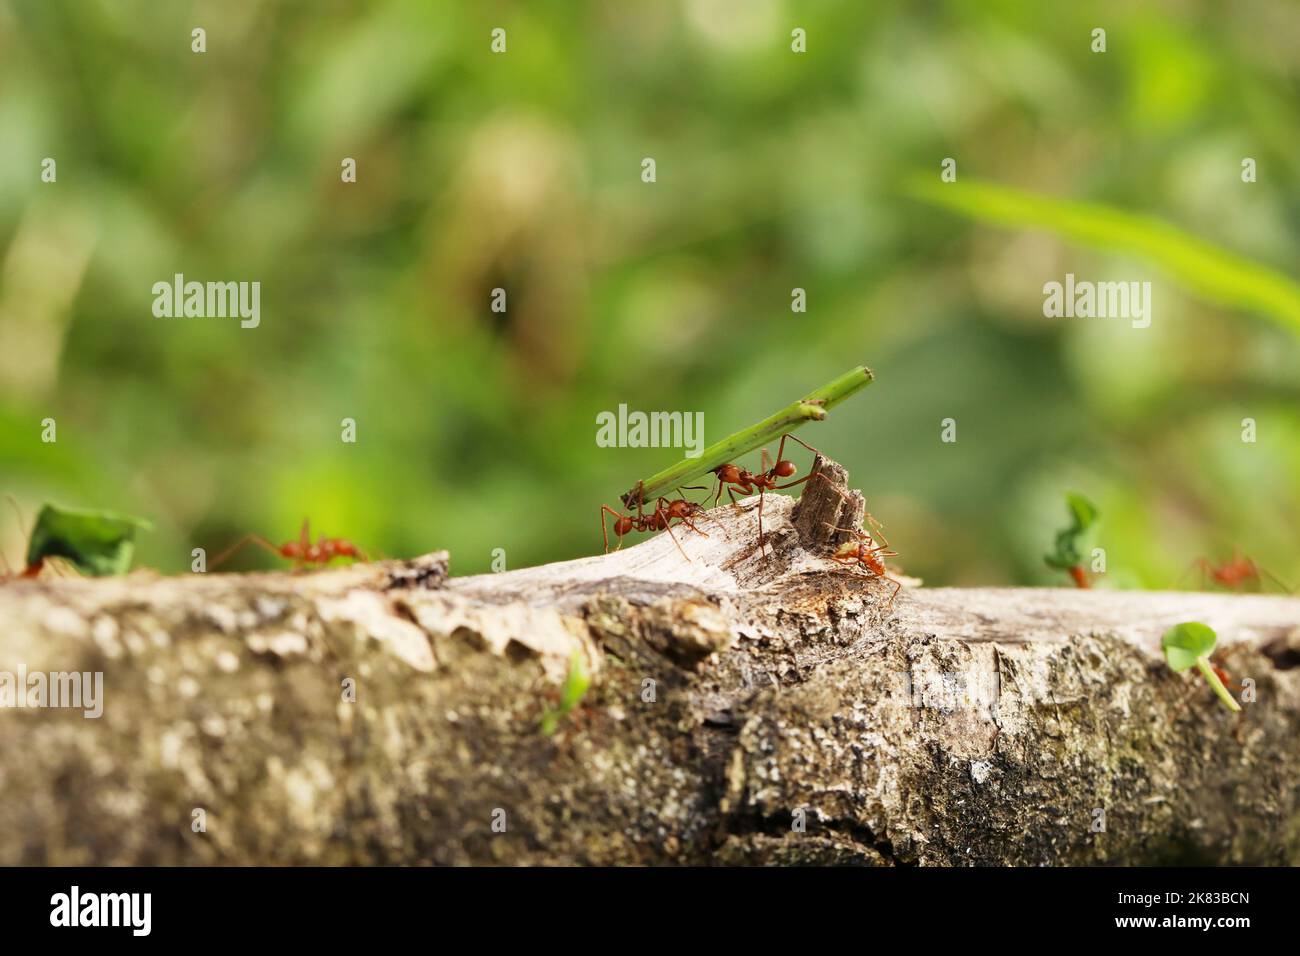 Leaf-Cutter Ant, atta sp., adulte transportant segment foliaire de fourmilière, Costa Rica Banque D'Images